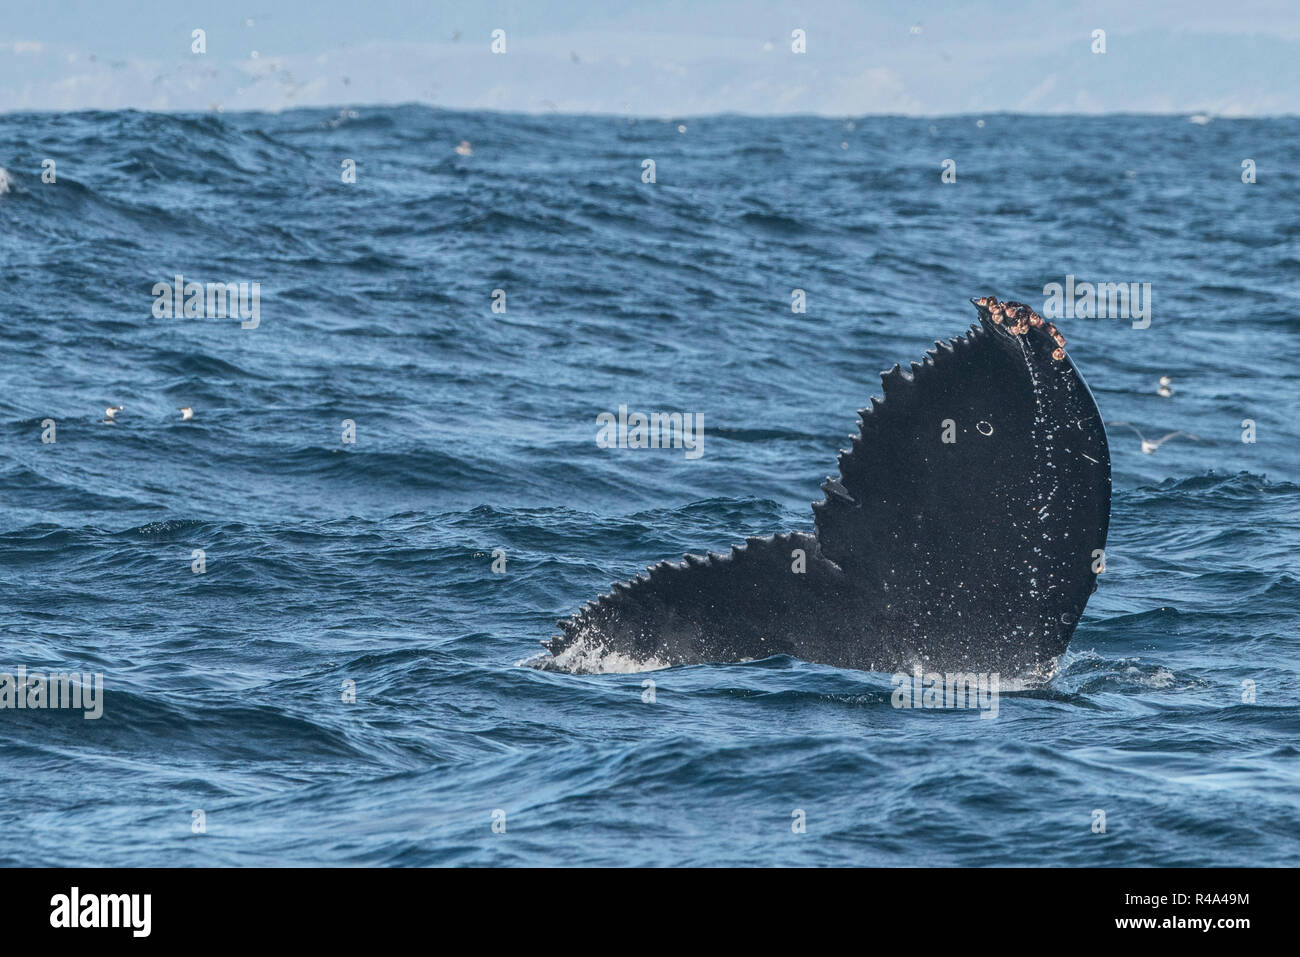 Une baleine à bosse de l'appartenance à une qui dépasse de l'eau au large de la côte de Californie, près de San Francisco. Banque D'Images